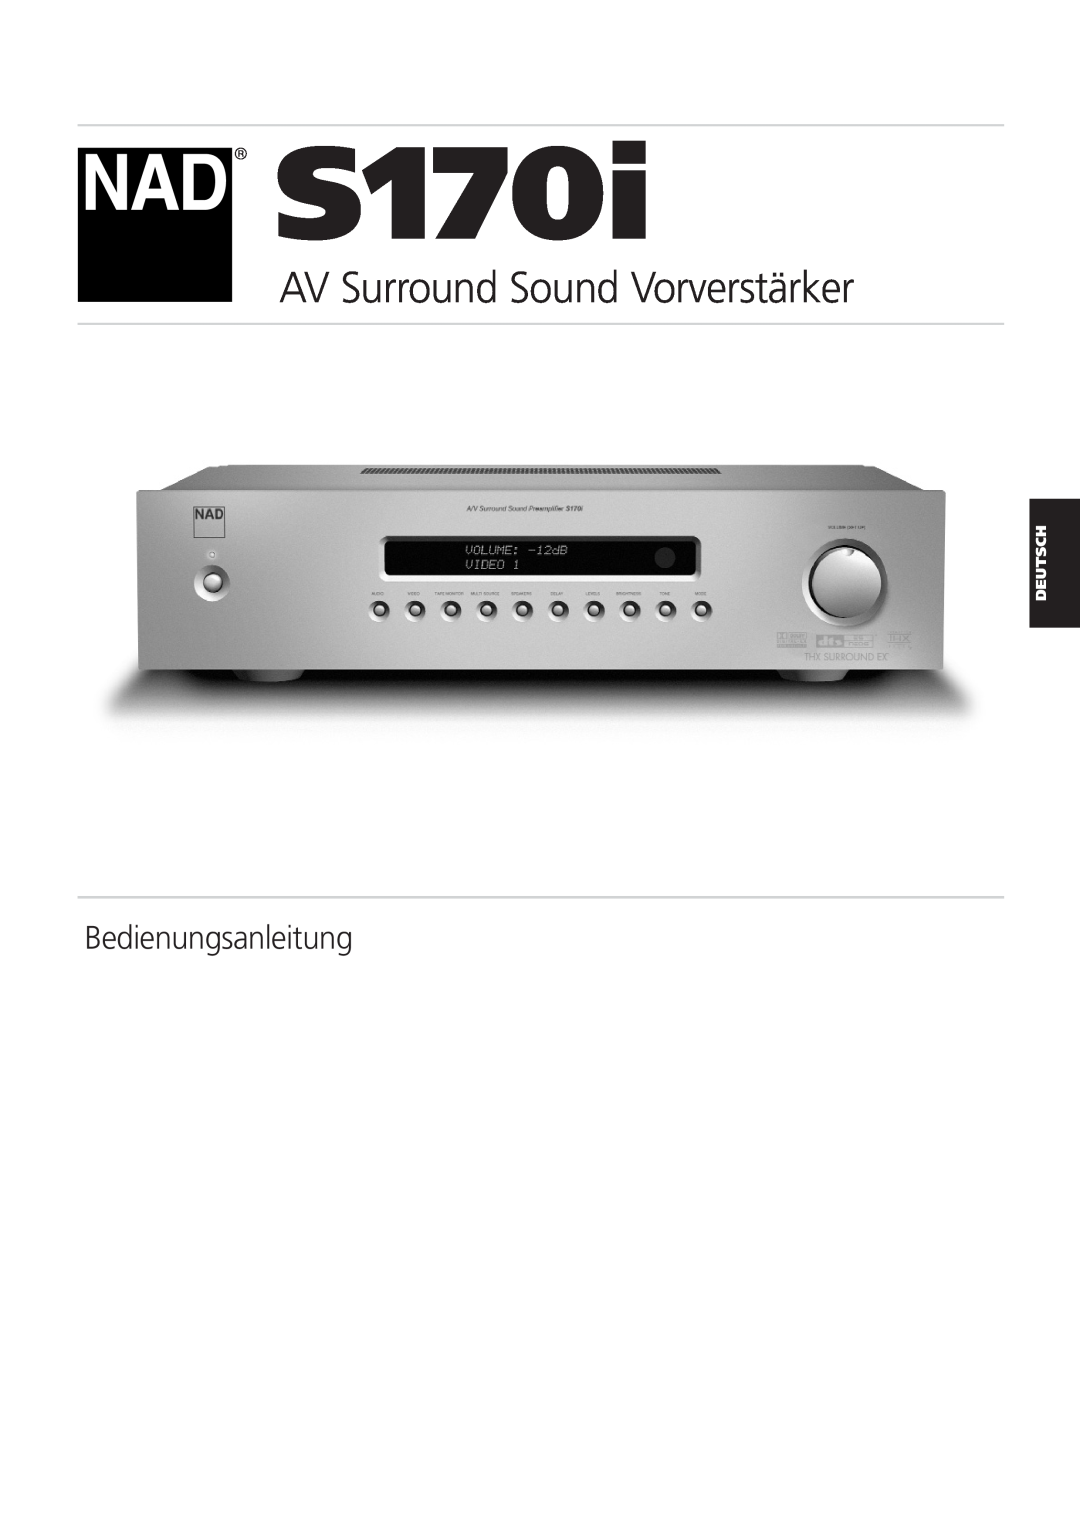 NAD S170iAV owner manual AV Surround Sound Vorverstärker, Bedienungsanleitung, Deutsch 